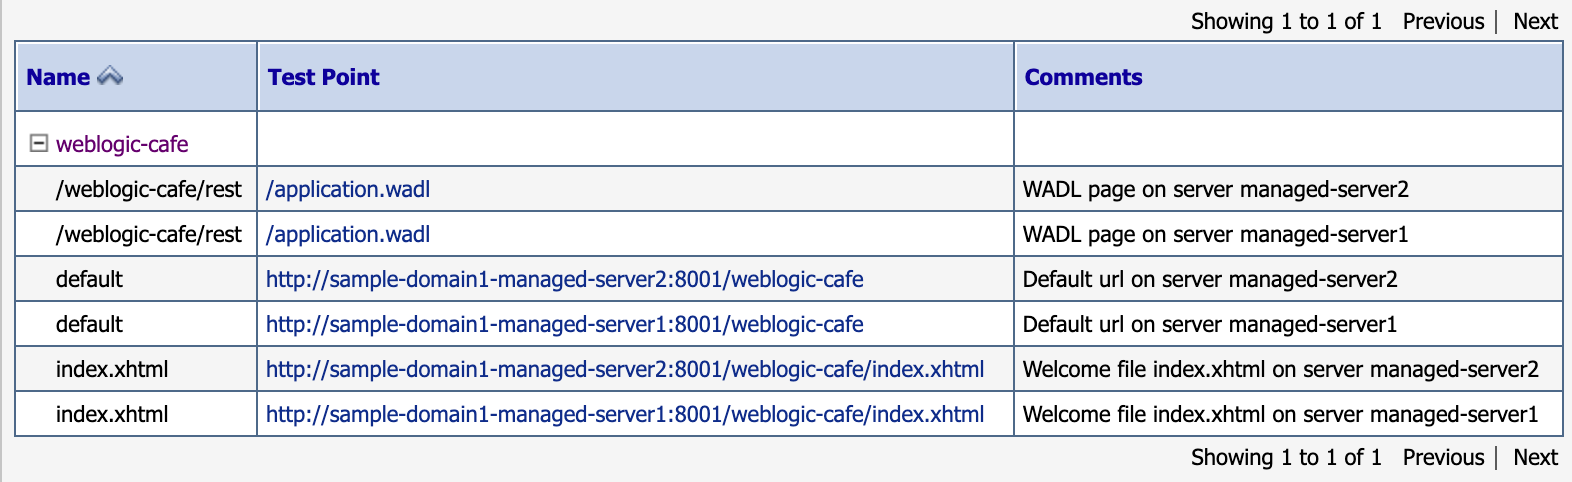 Képernyőkép a weblogic-café tesztpontokról.